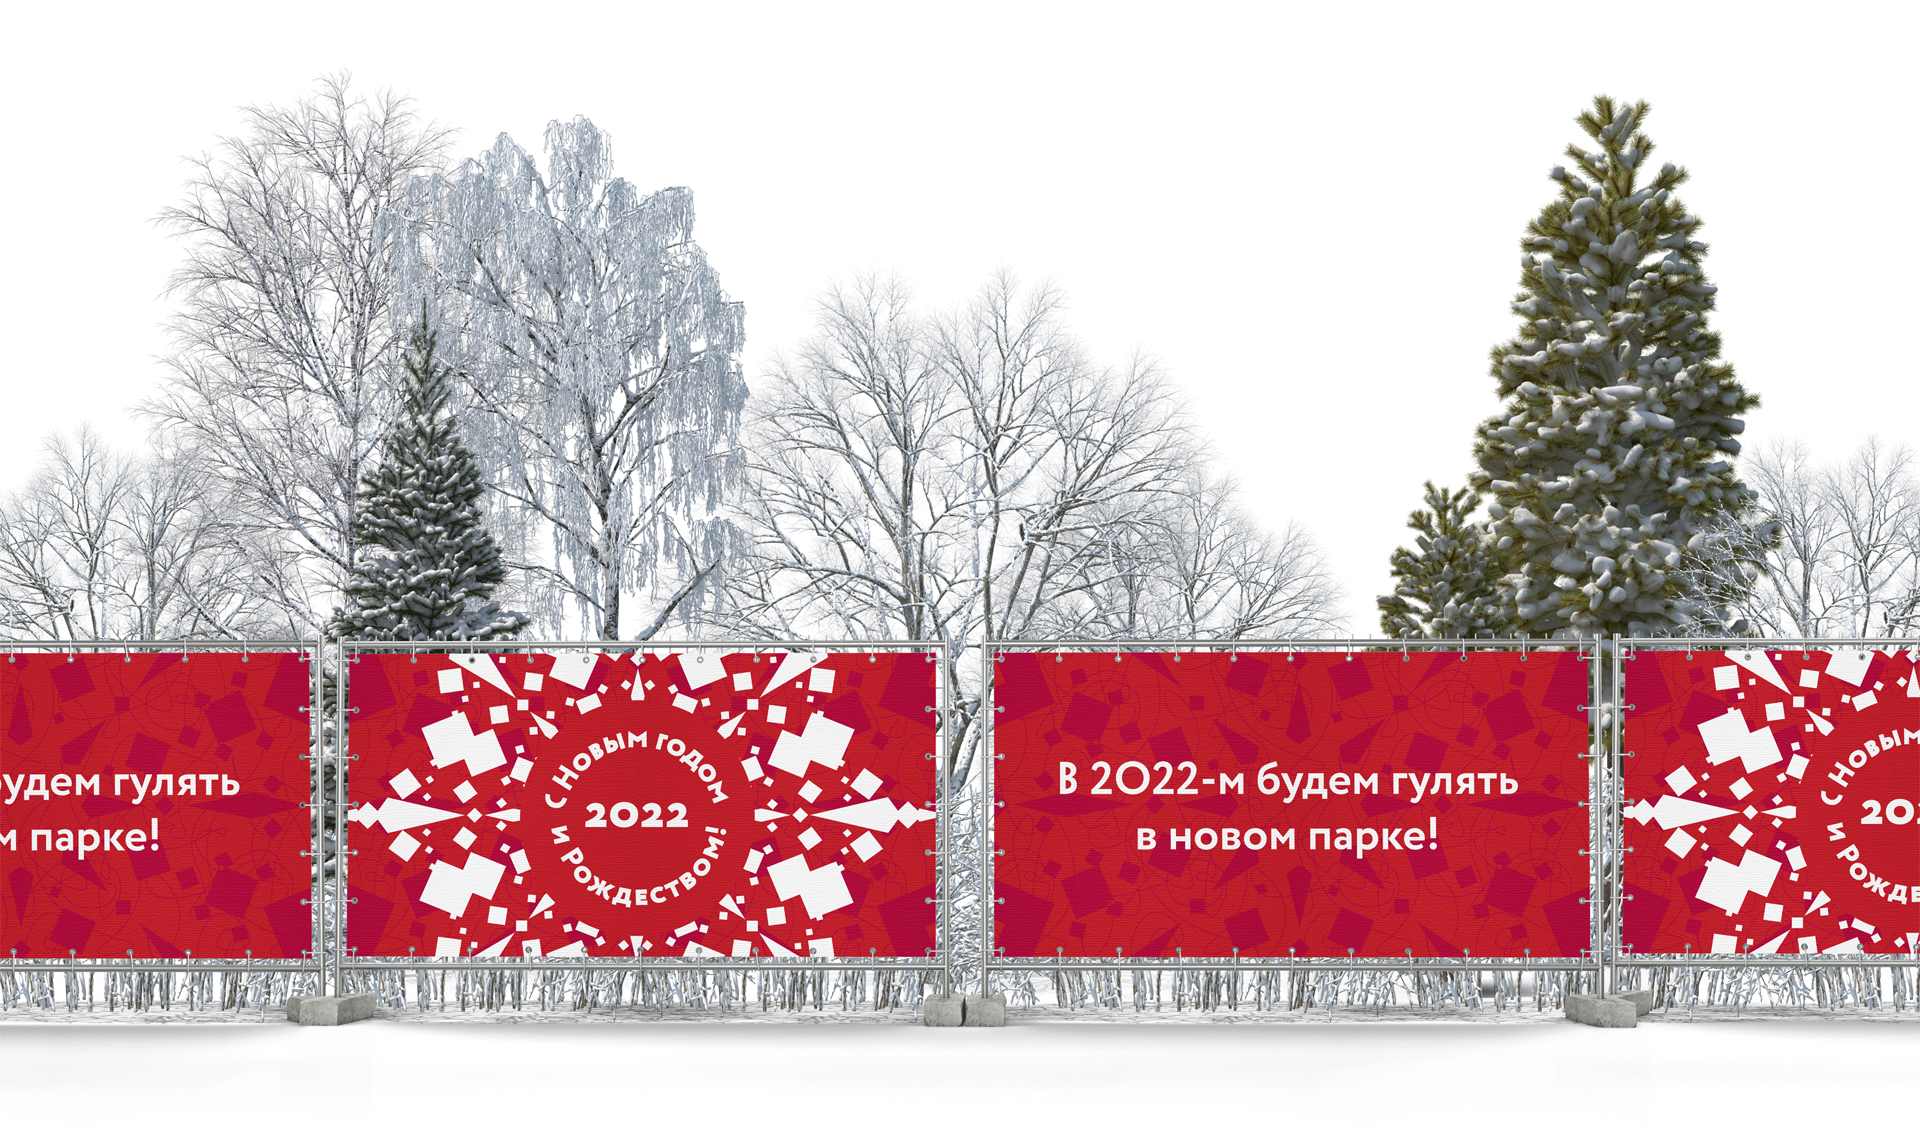 Новый год и рождество в Красноярском крае — проект Лаборатории развития